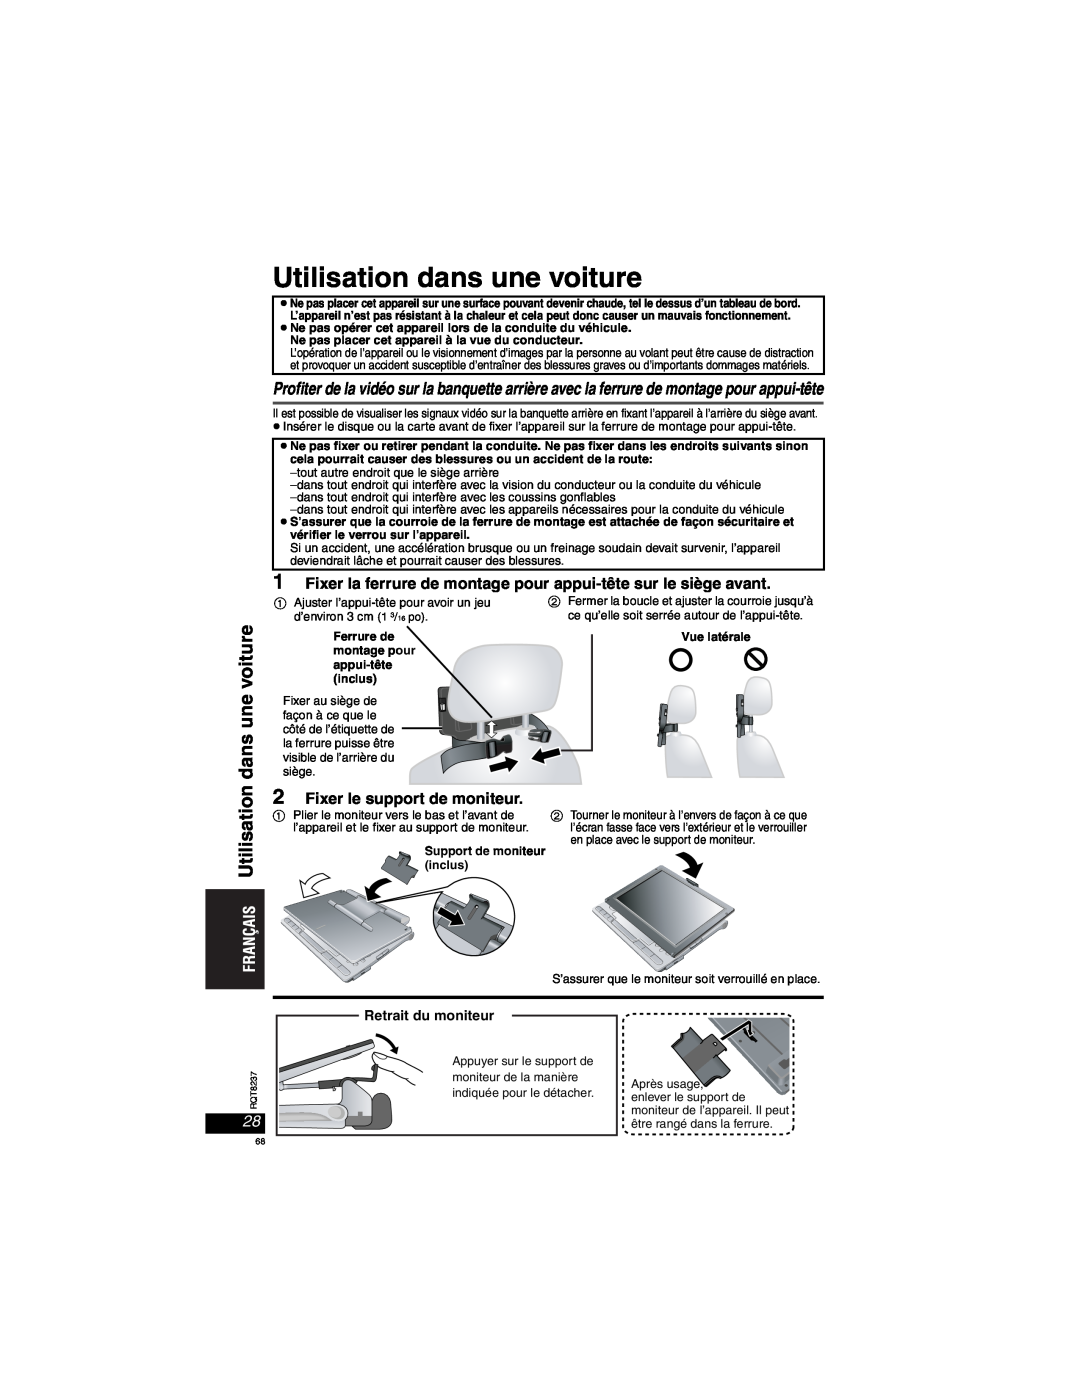 Panasonic DVD-LX97 Utilisation dans une voiture, Fixer la ferrure de montage pour appui-tête sur le siège avant 